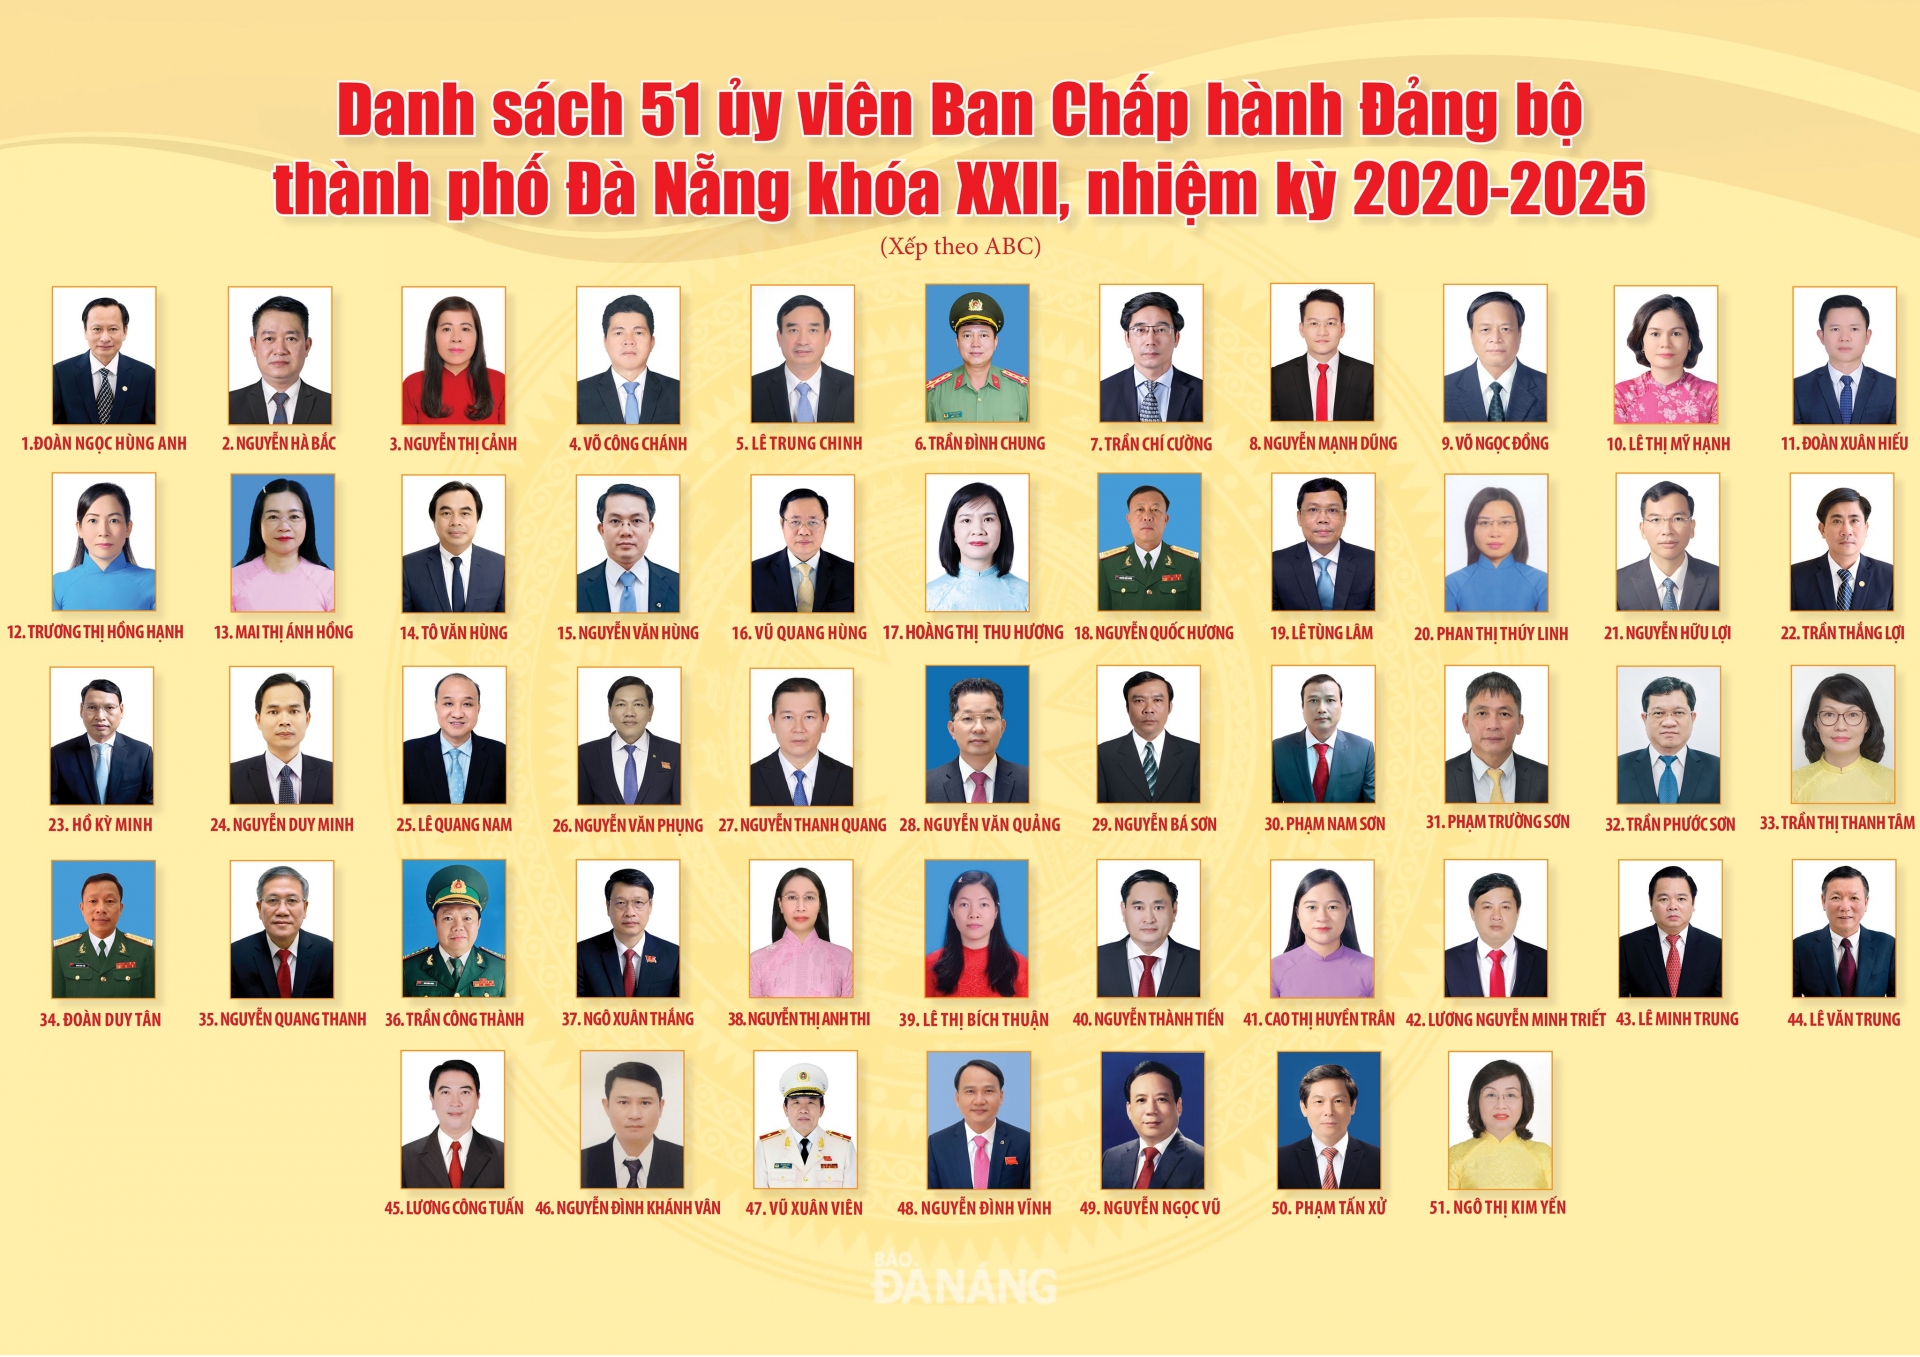 Danh sách Ban Chấp hành Đảng bộ, Ban Thường vụ Thành ủy Đà Nẵng khóa XXII, nhiệm kỳ 2020 - 2025